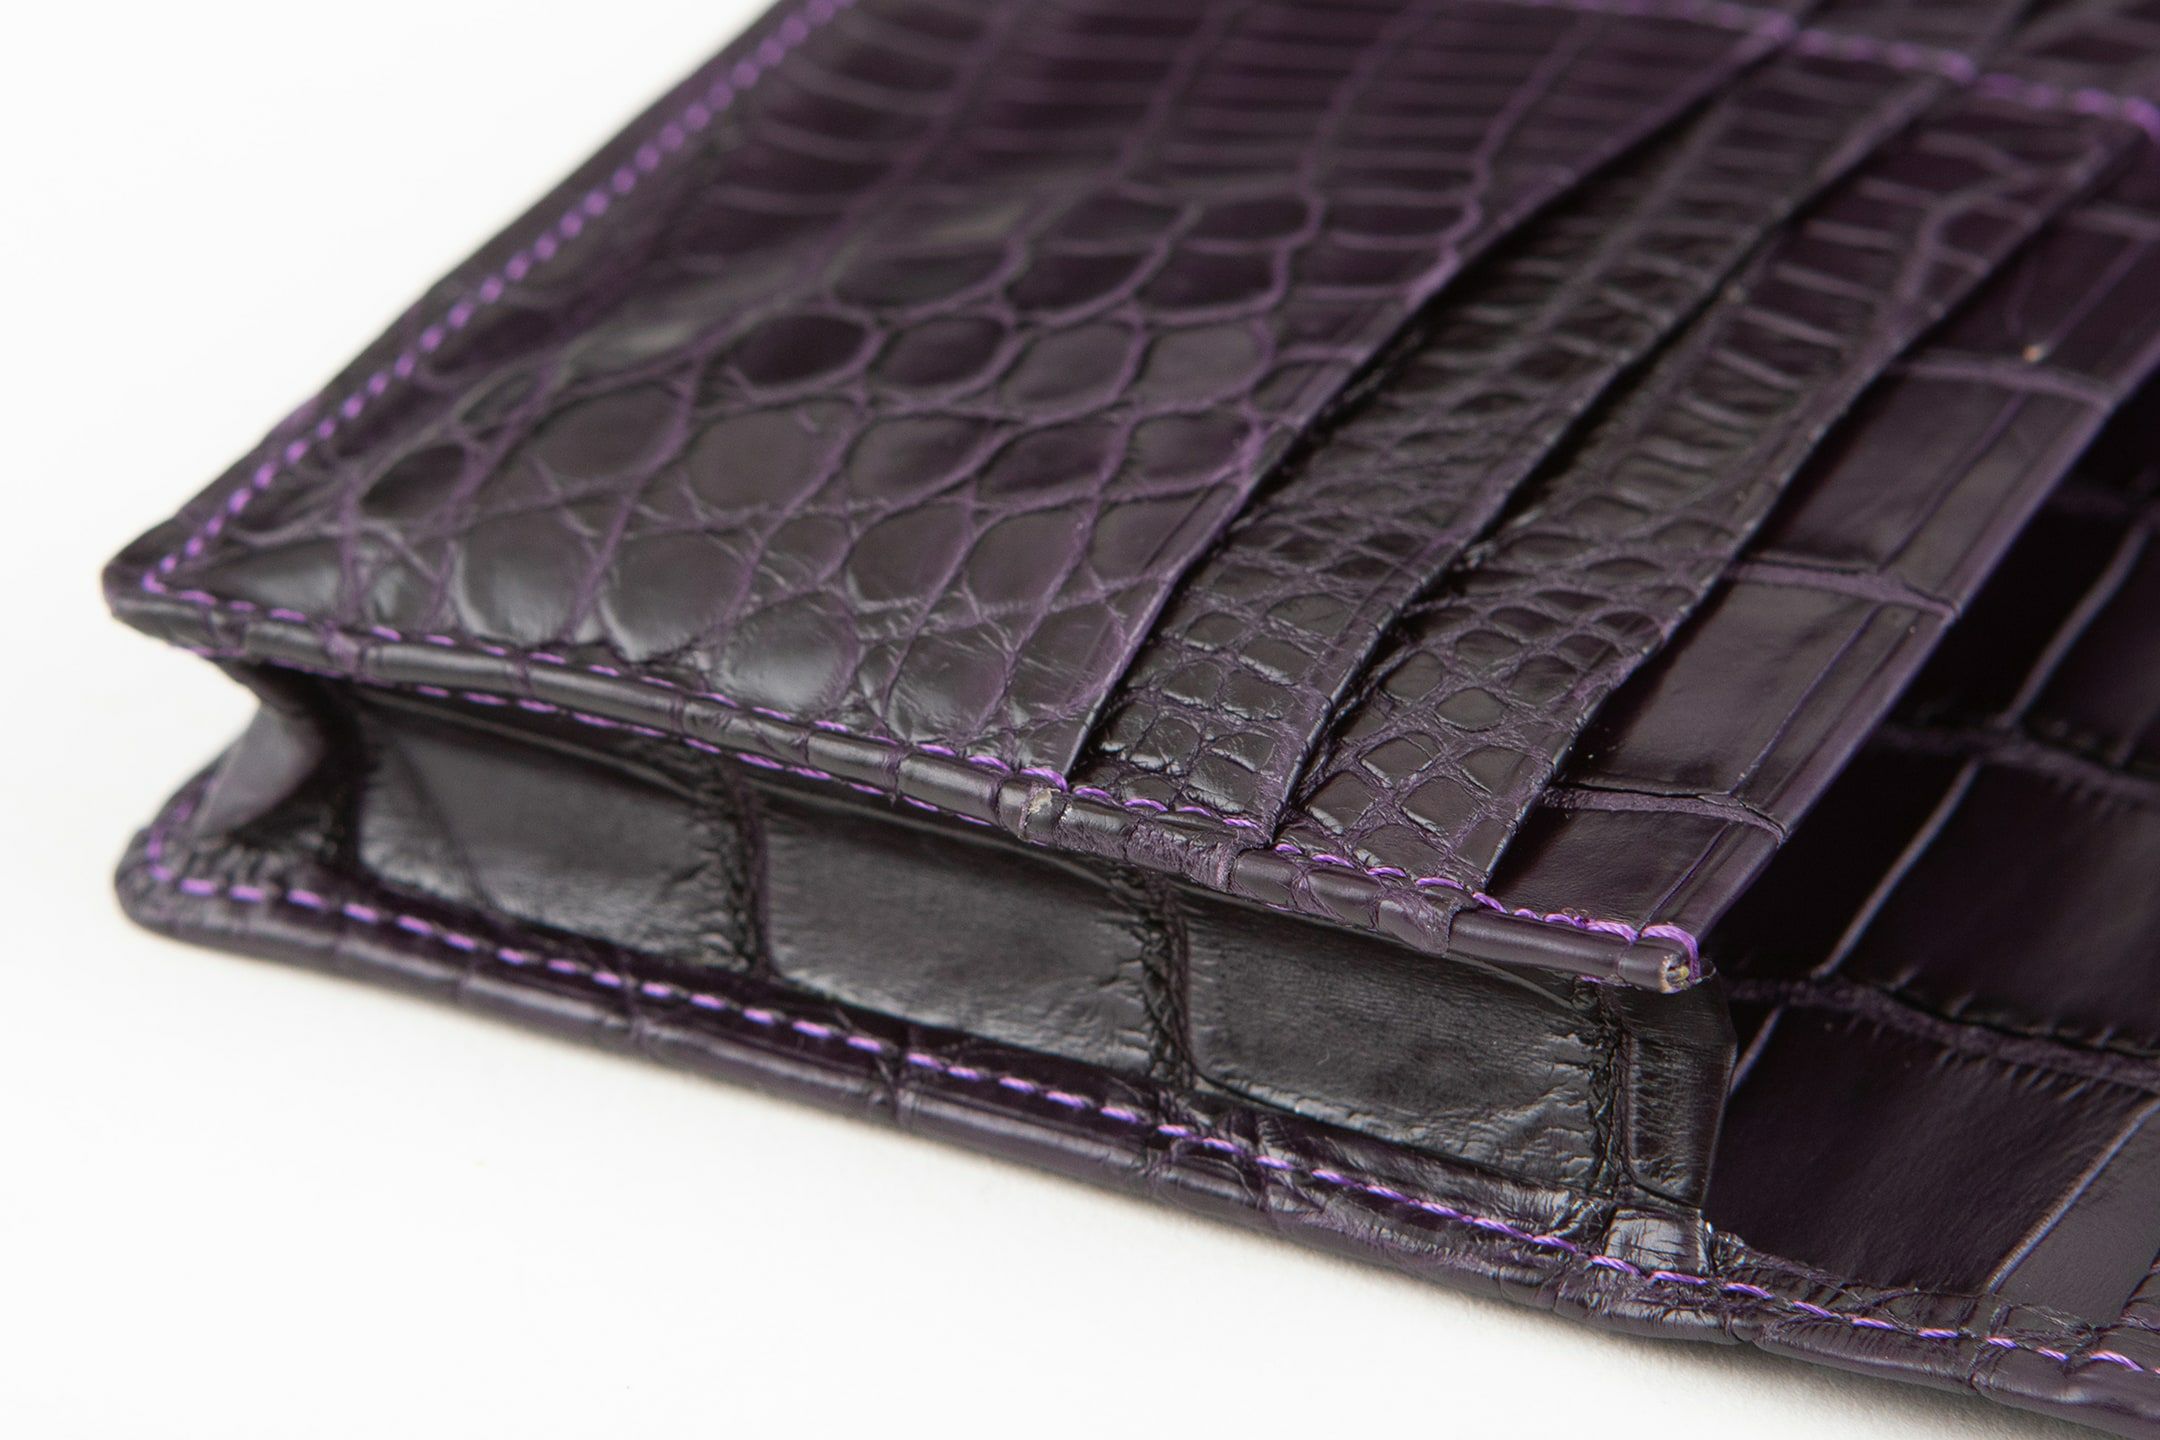 ナイルクロコダイル 長財布 | 大人の財布・ 長財布 など拘りの日本製 